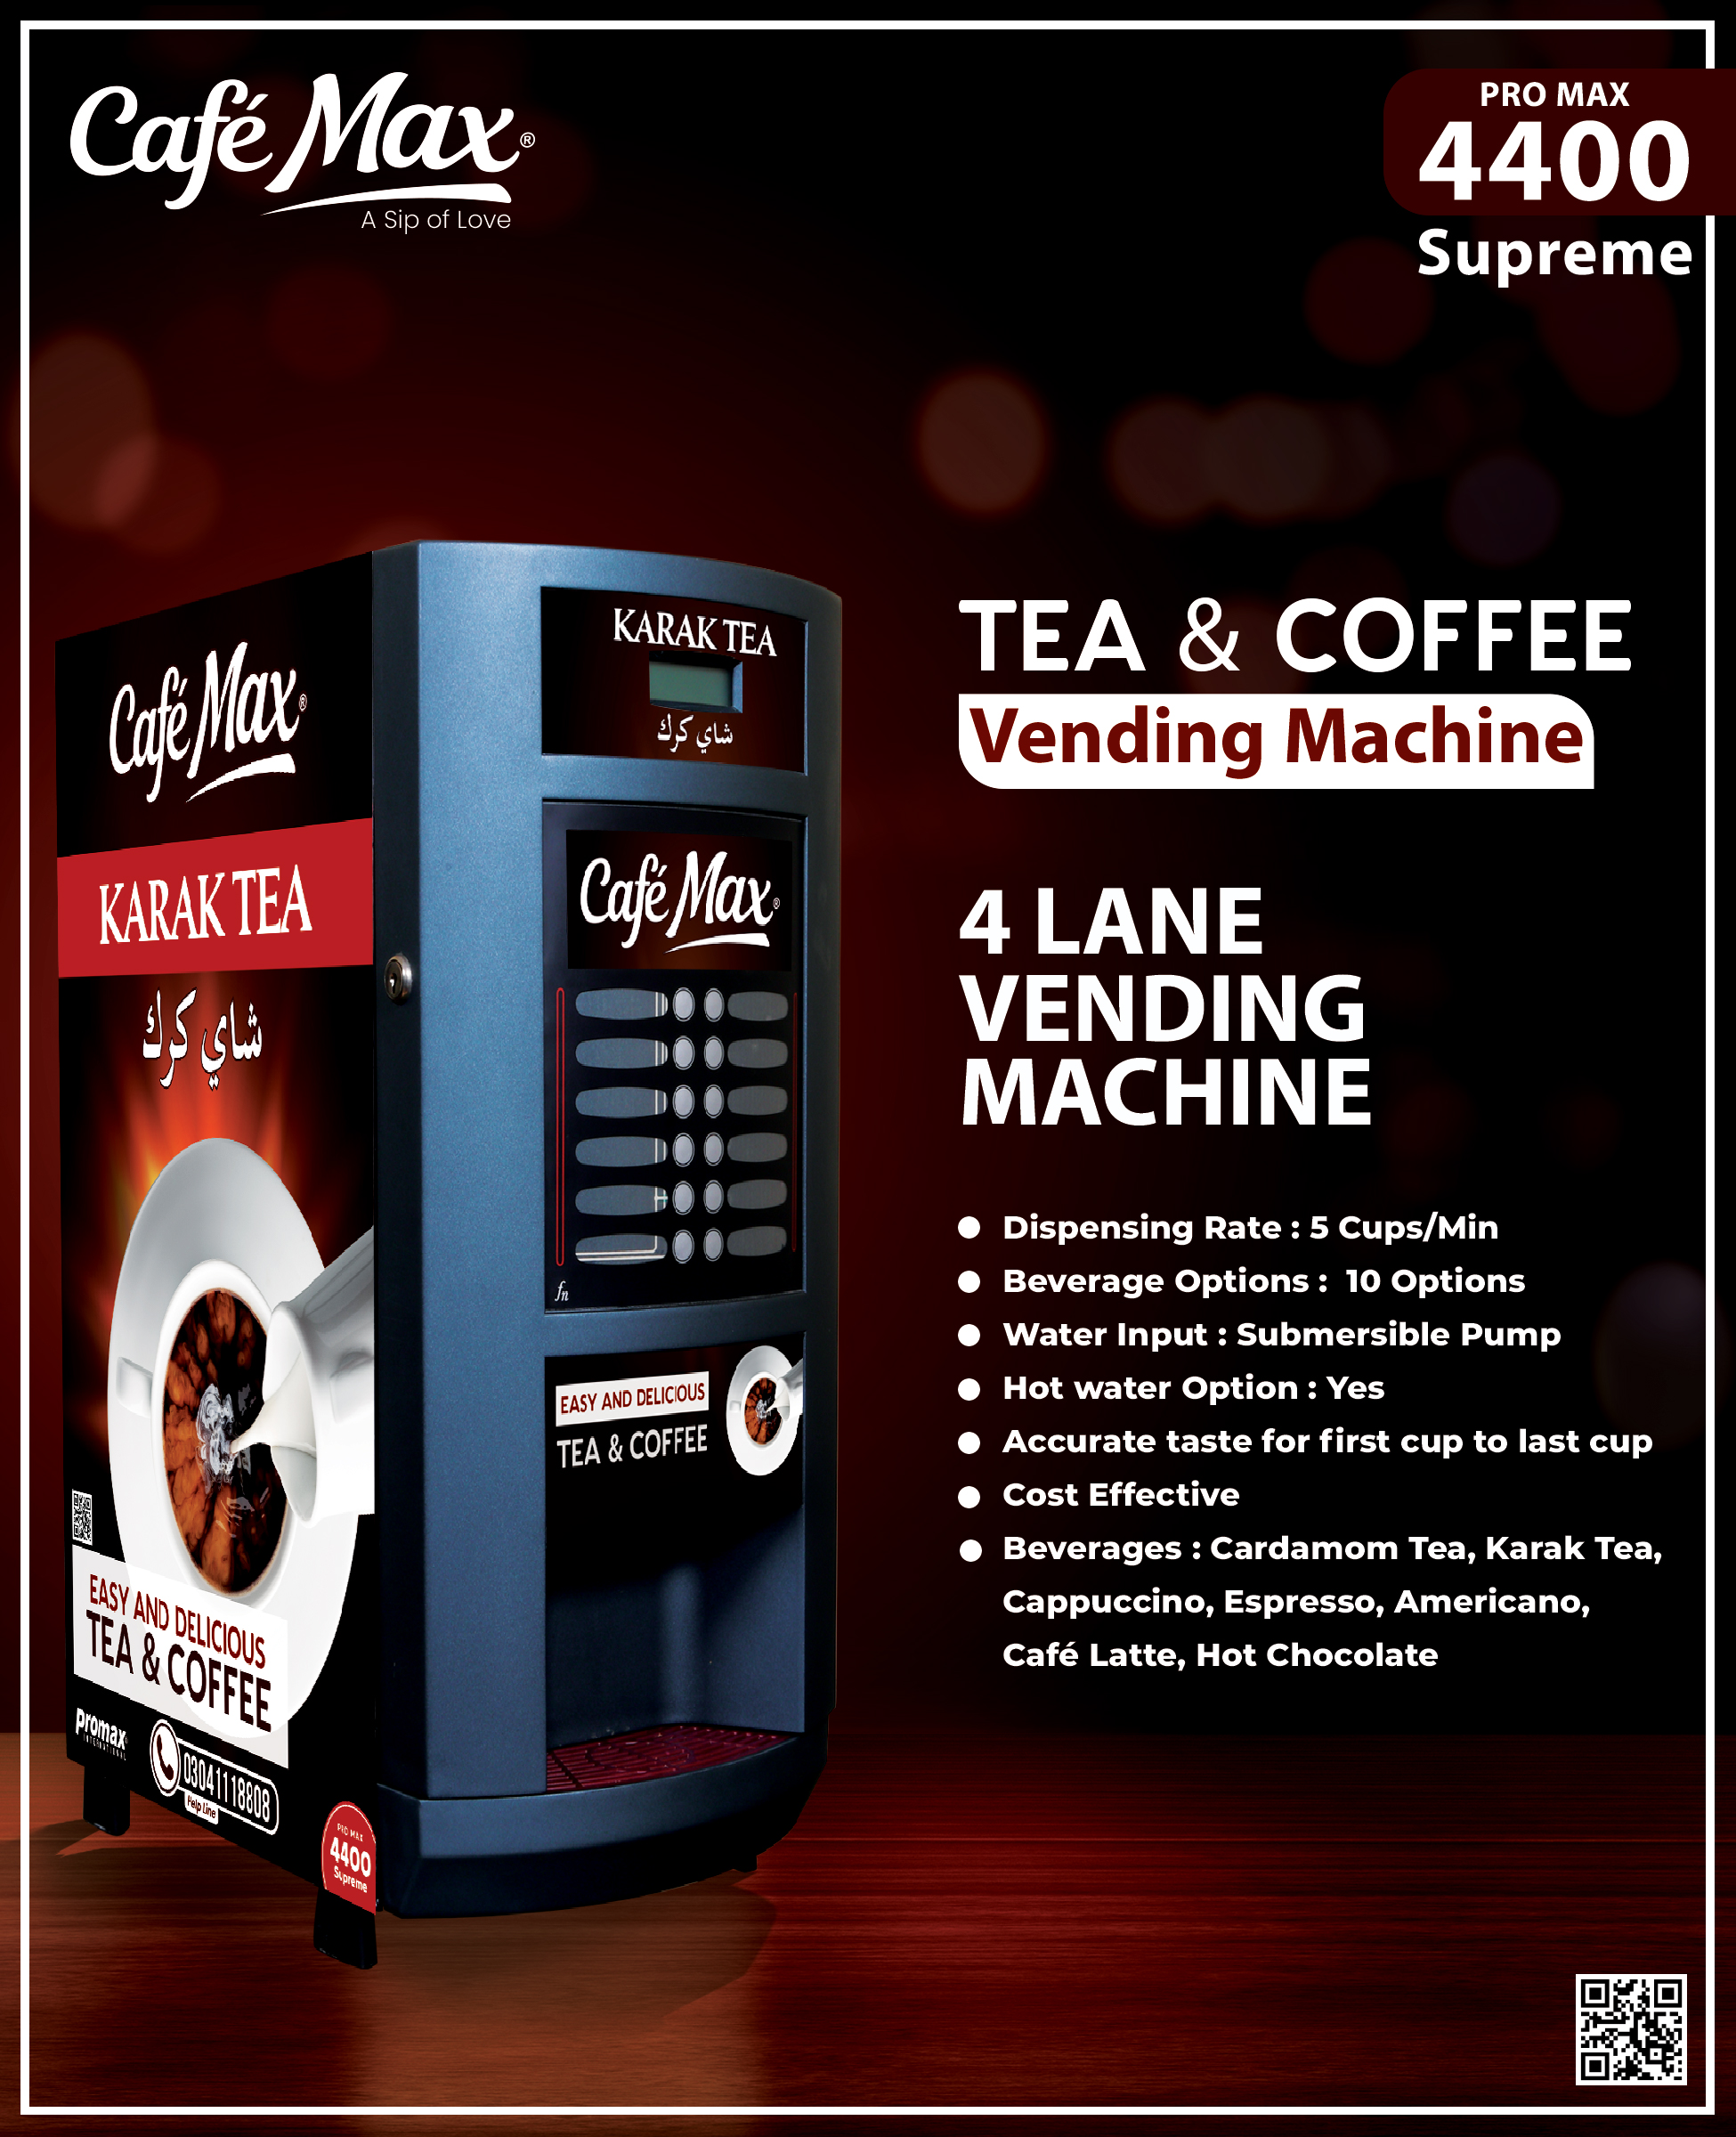 Promax 4400 Supreme vending machine